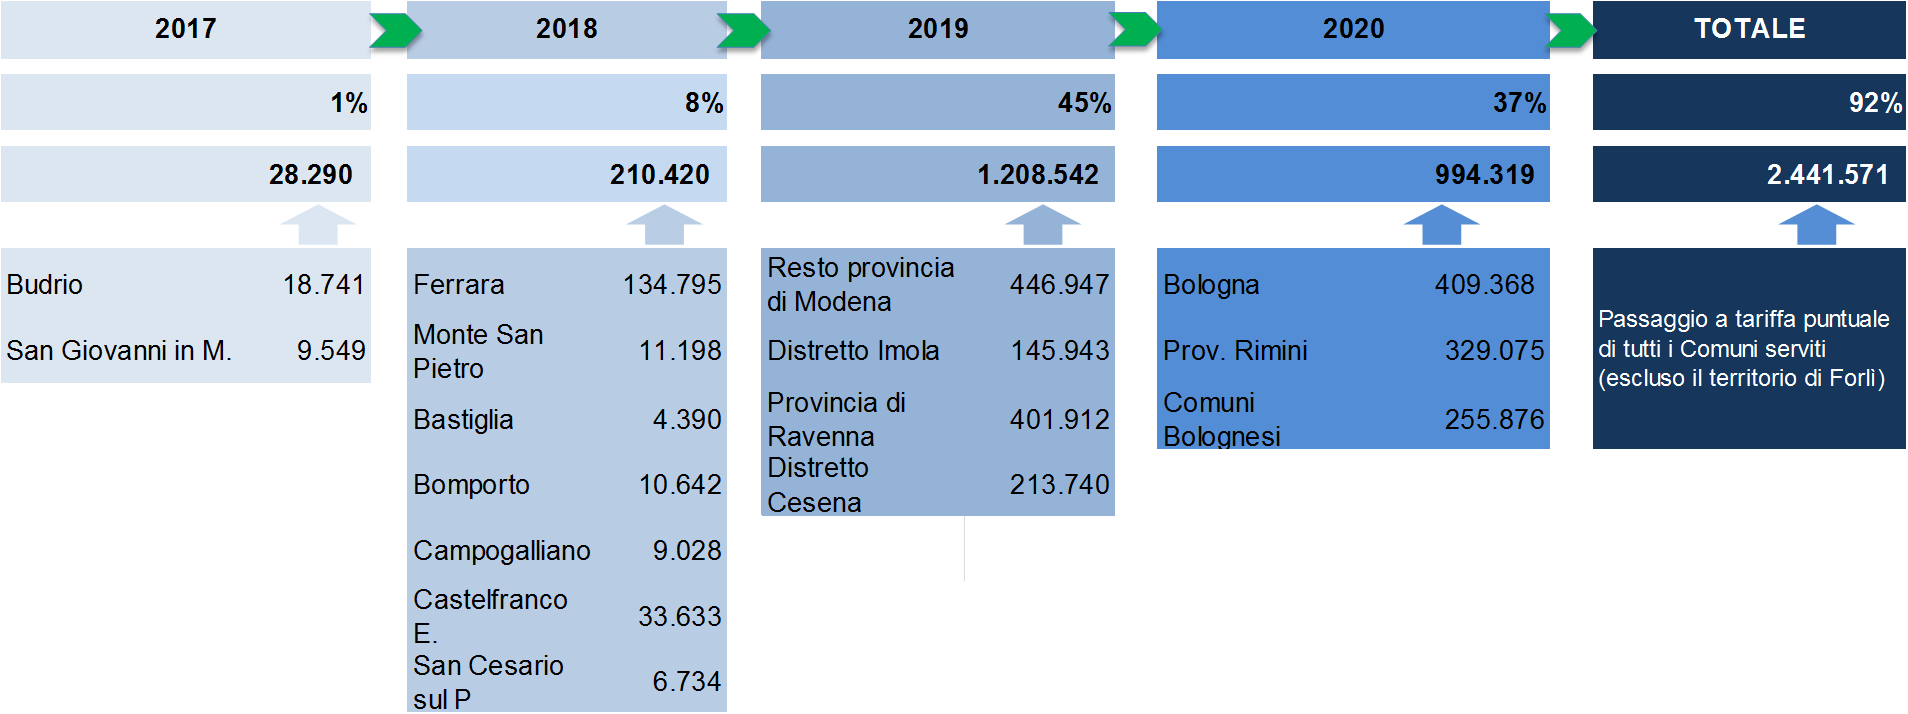 LA TARIFFA PUNTUALE L avvio della Tariffa Puntuale su tutto il territorio dell Emilia Romagna entro il 2020 diventa un disposizione di legge (Legge Regionale n.